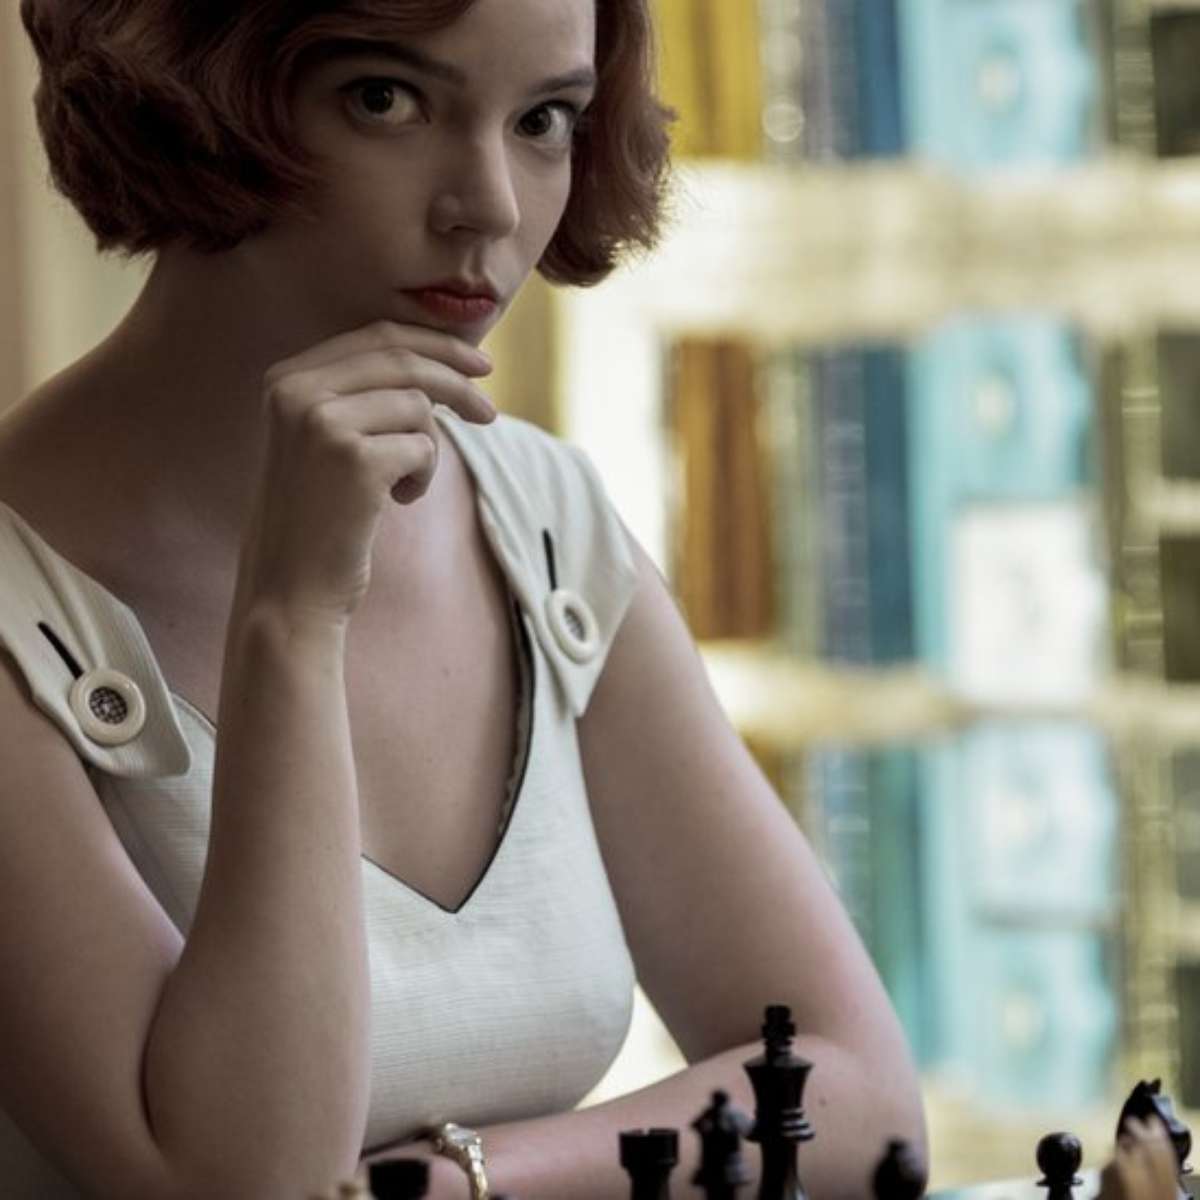 O Gambito da Rainha: especialista em xadrez aponta erros e acertos da série